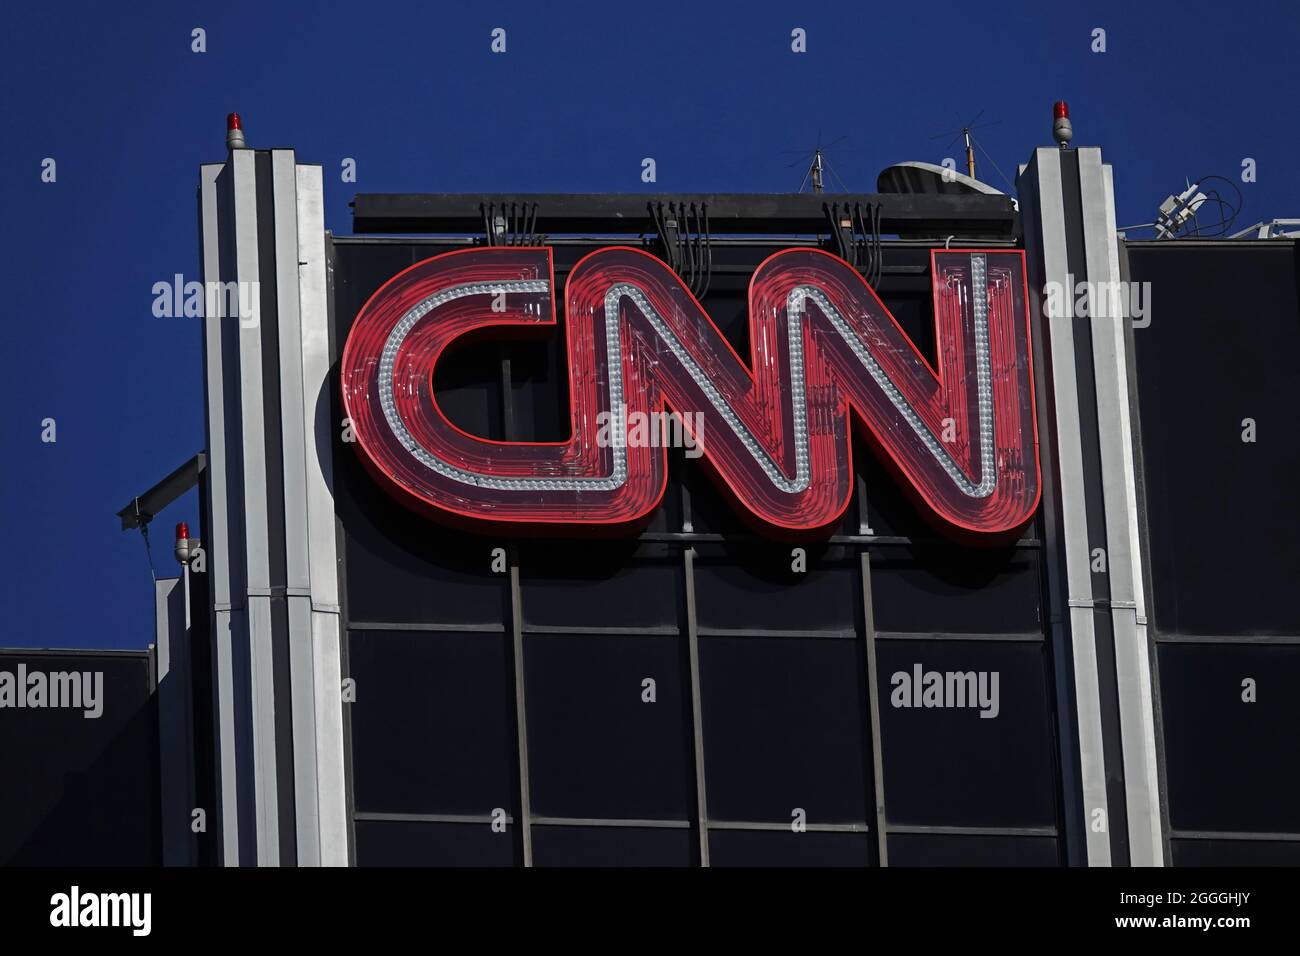 Los Angeles, CA / USA - 29. September 2018: Das klassische CNN-Logo (Cable News Network) ist am späten Nachmittag auf einem Gebäude in Hollywood zu sehen. Stockfoto